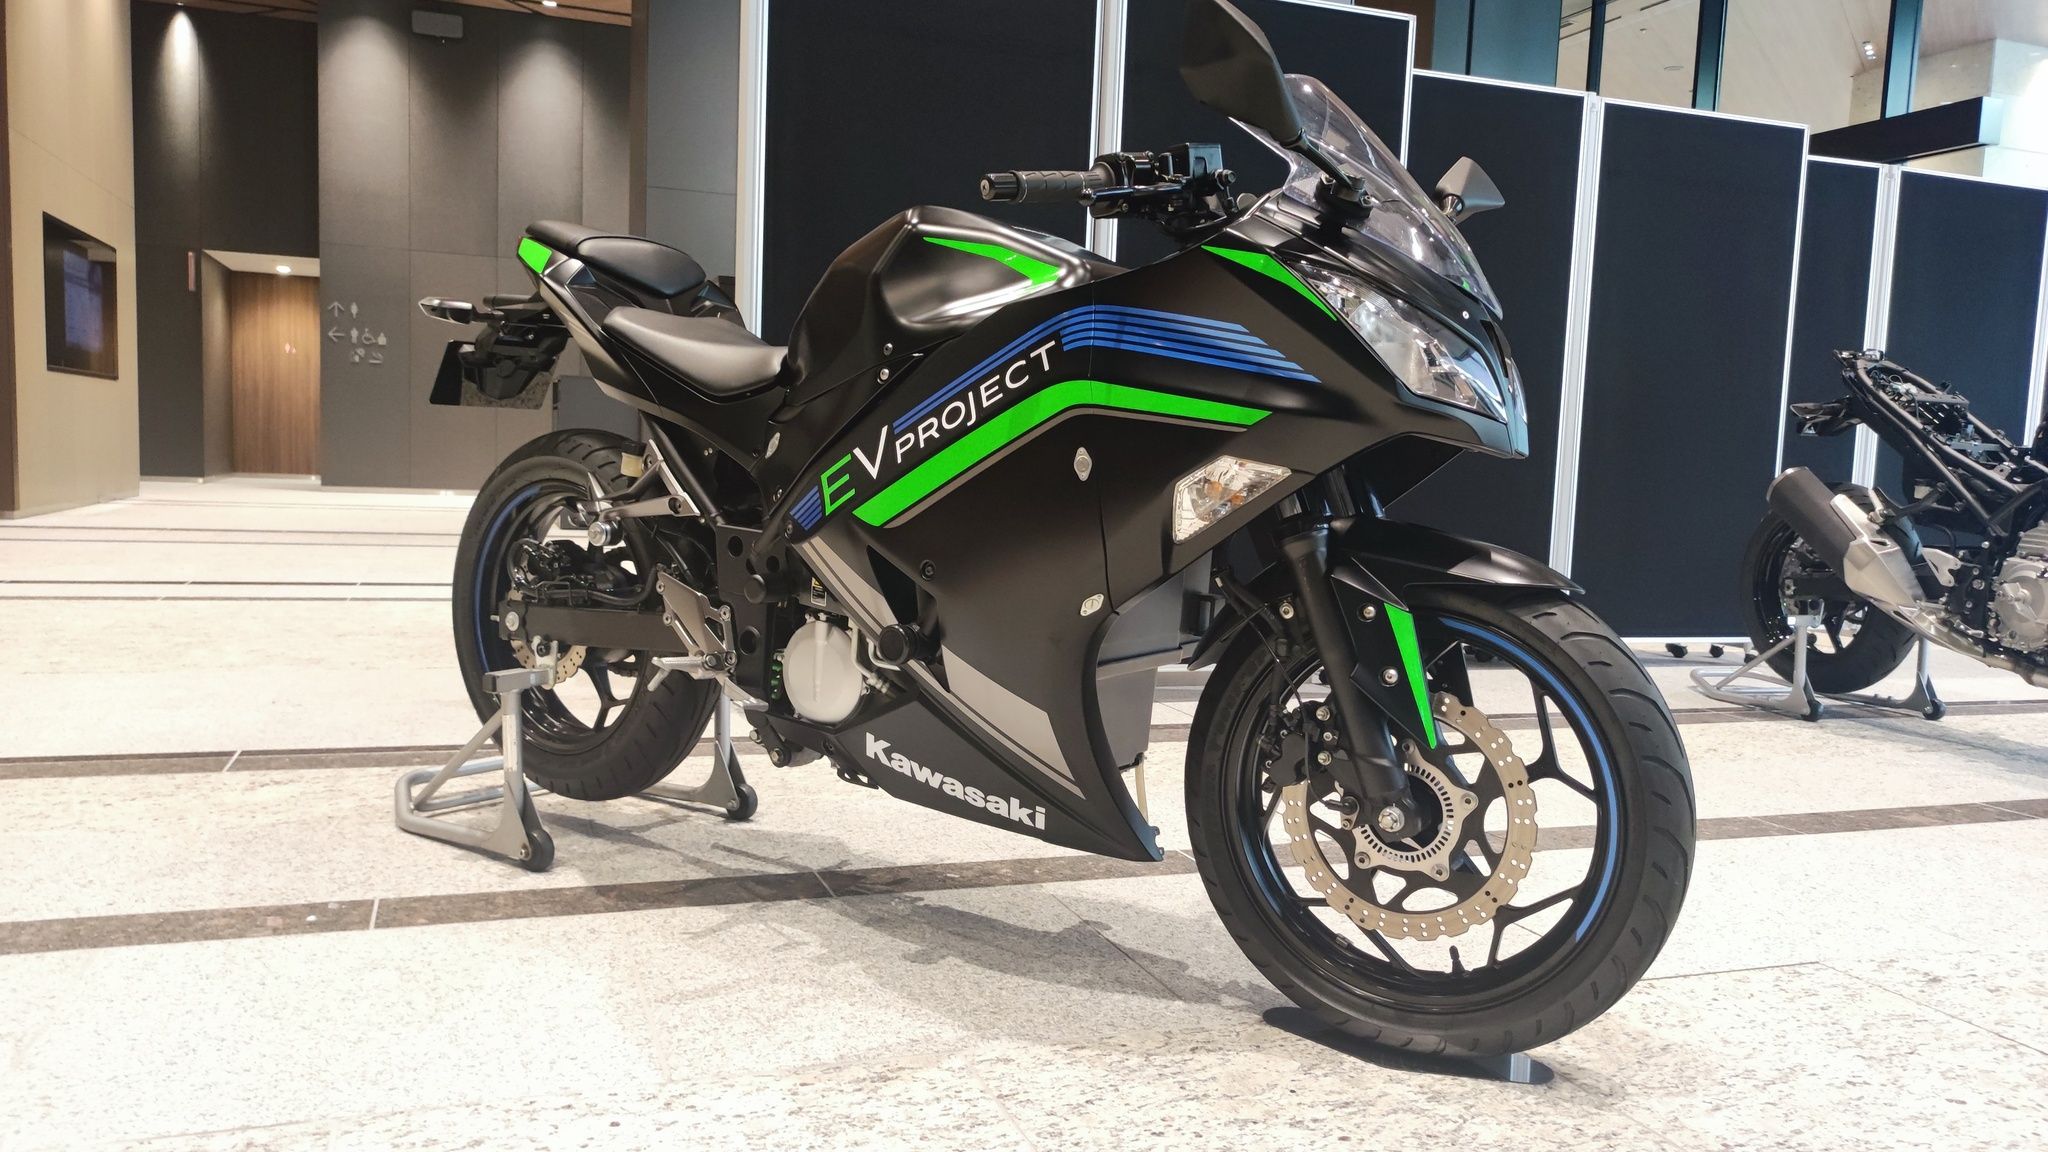 Several Kawasaki Hybrid Motorcycles parked indoors